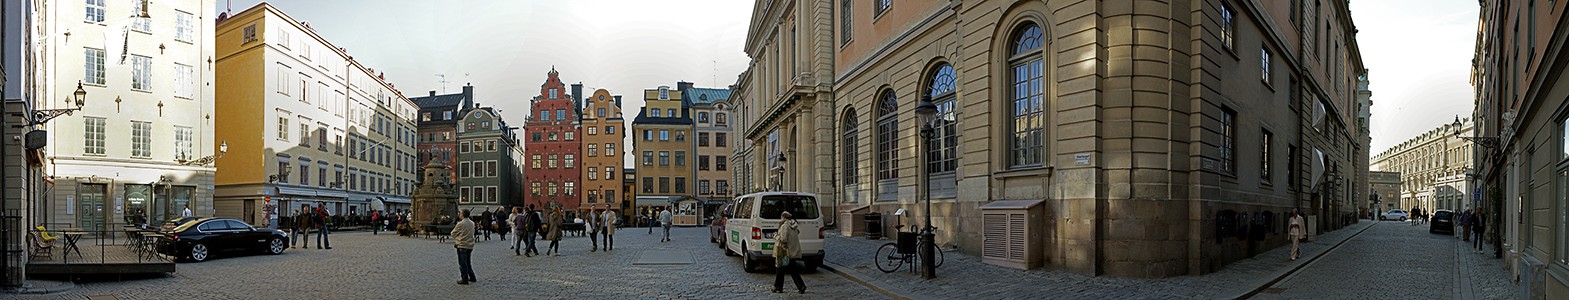 Stockholm Altstadt Gamla stan: Stortorget